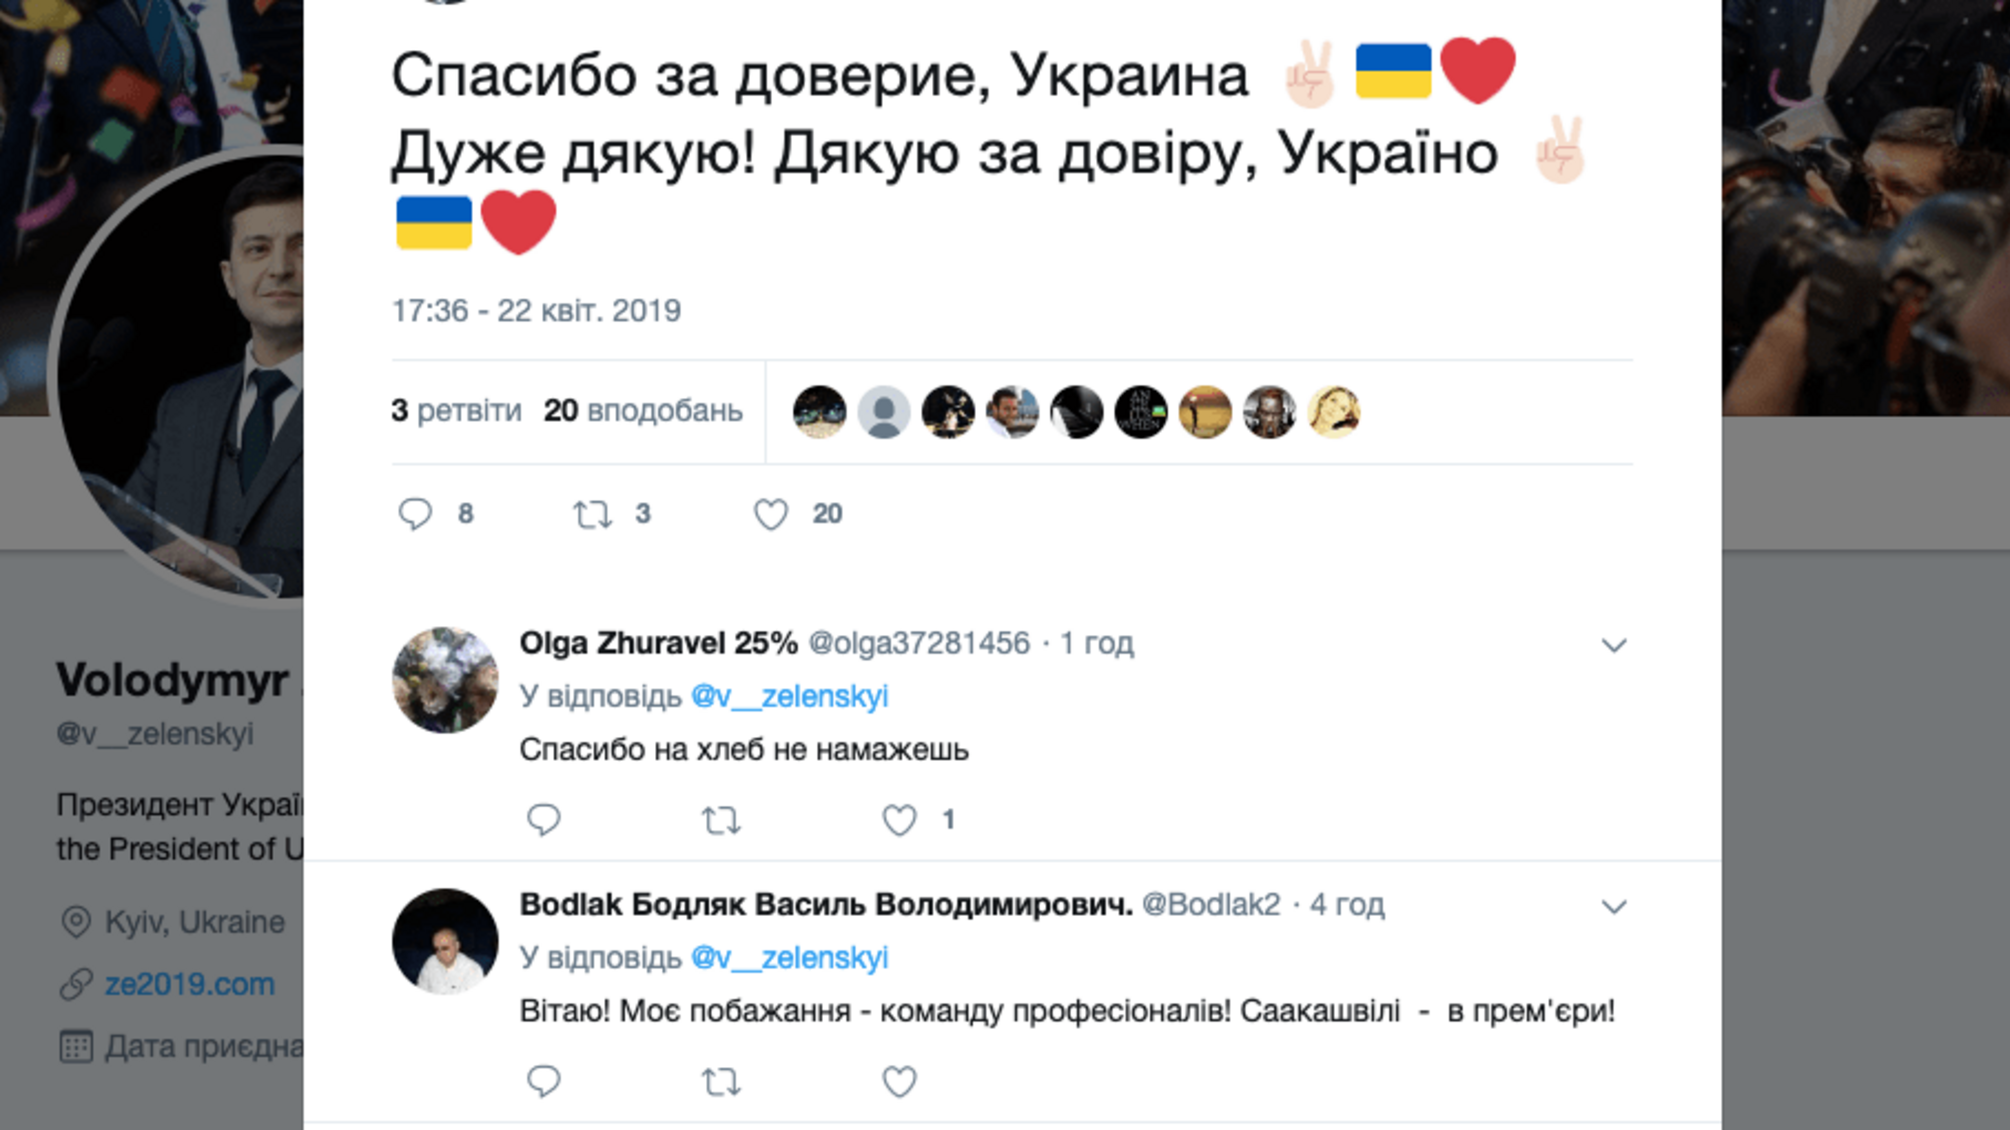 “Дякую за довіру, Україно”, – перший пост президента Зеленського у Twitter